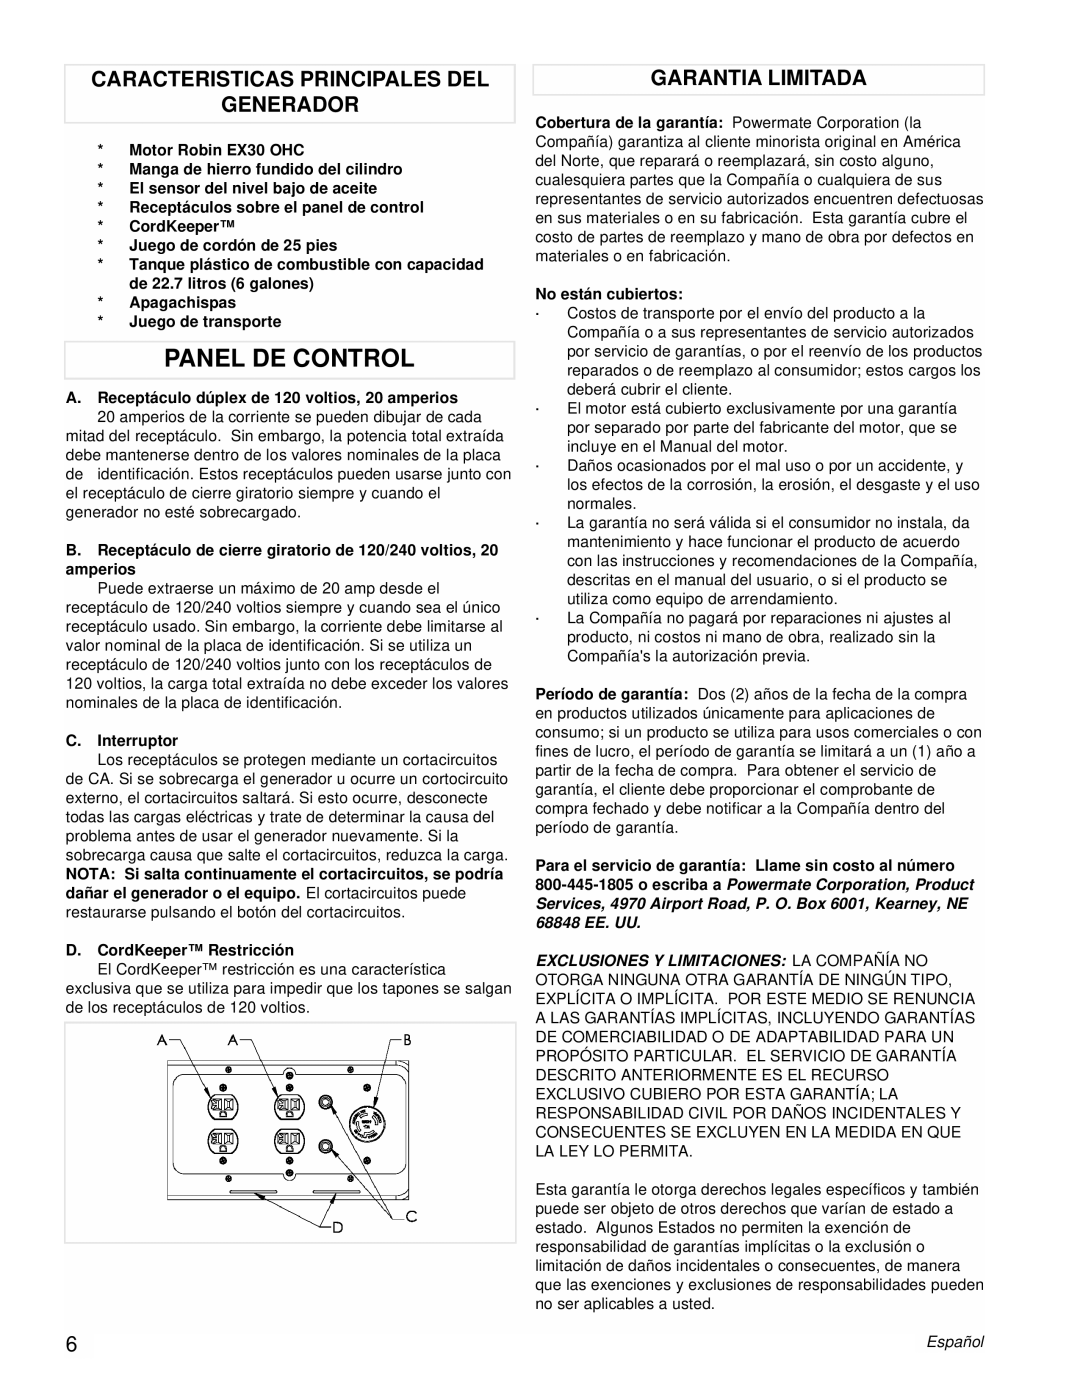 Powermate PM0435001 manual Panel De Control, Caracteristicas Principales Del Generador, Garantia Limitada 